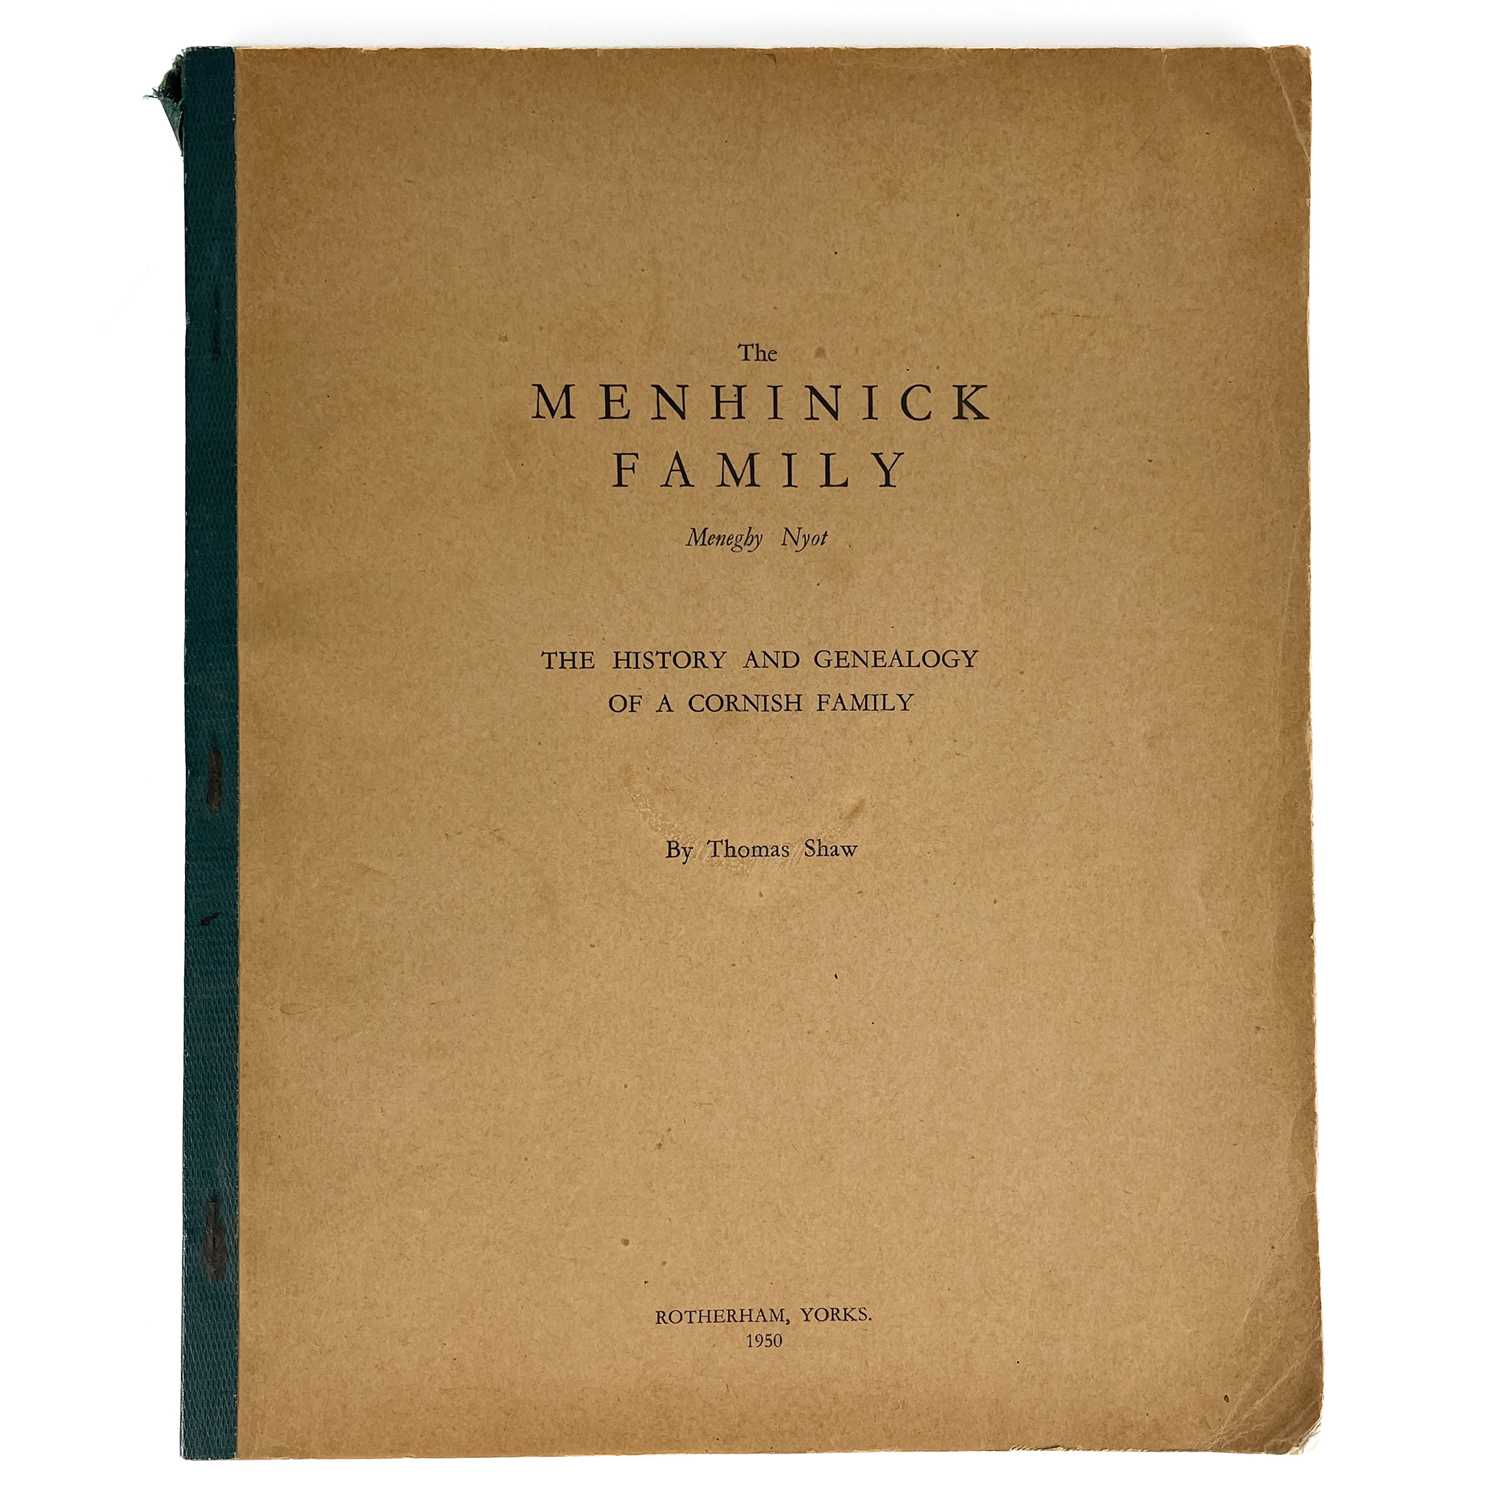 Lot 5 - The Menhennick Family.